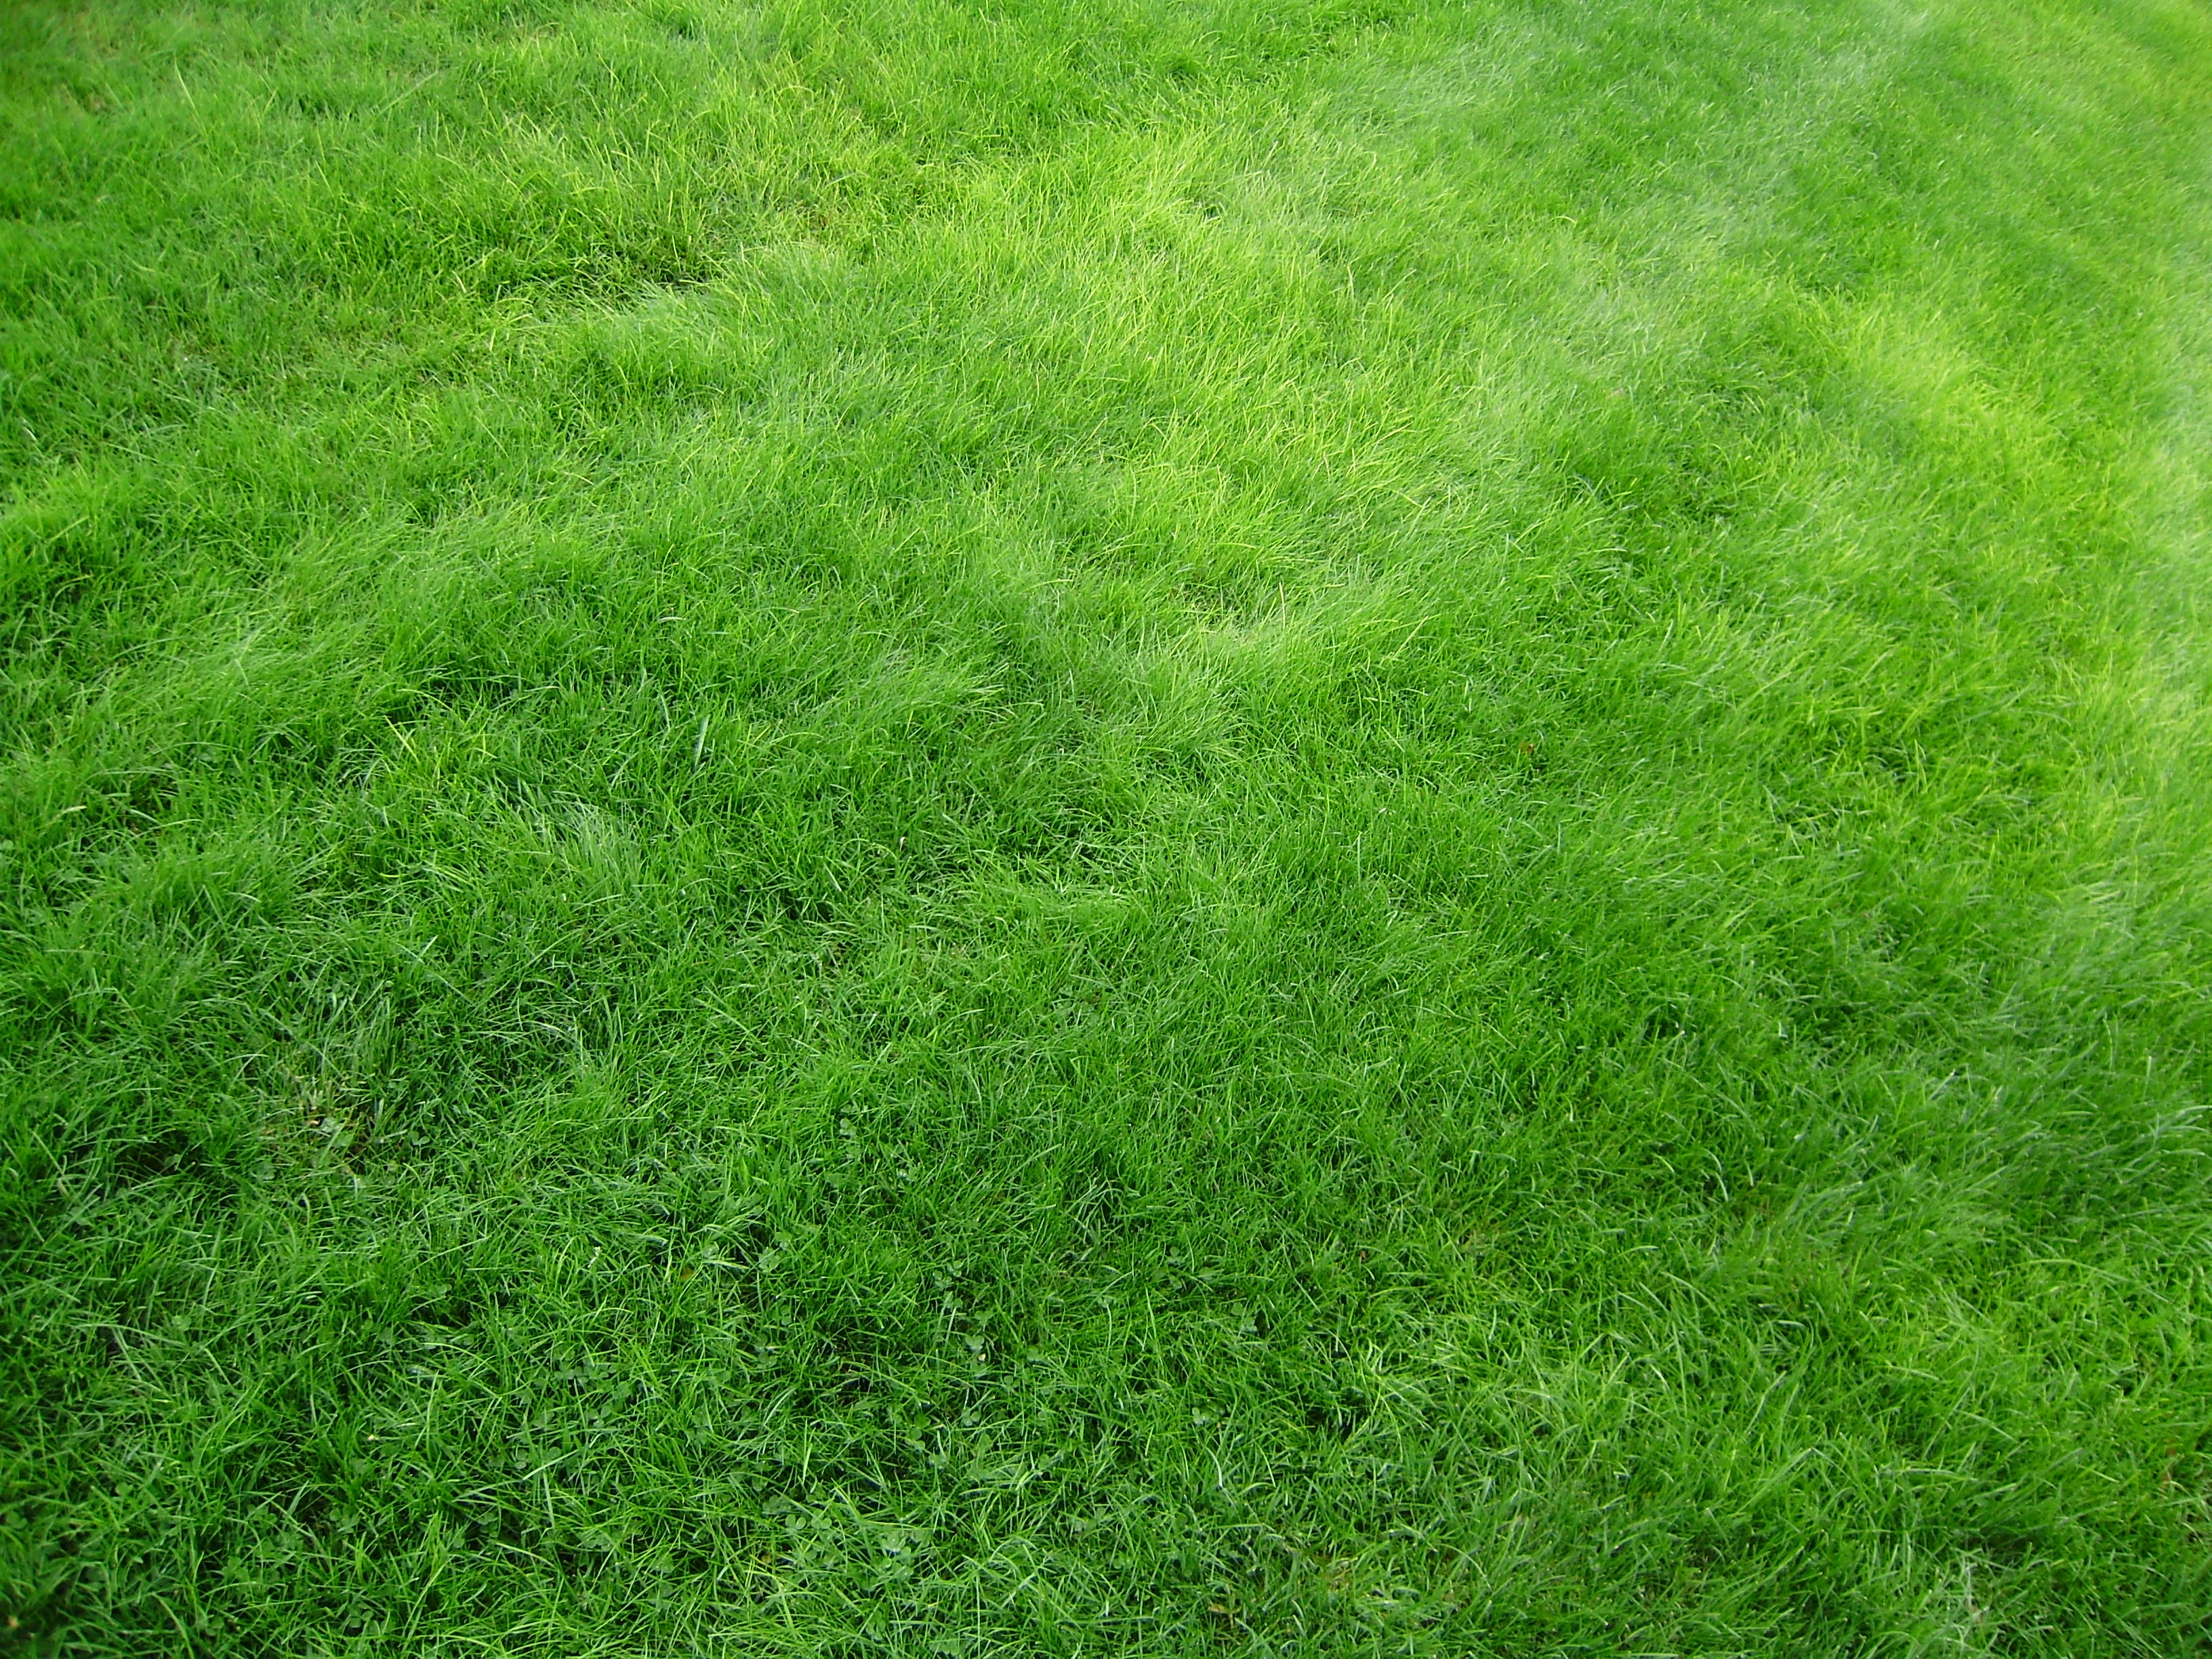 grass, textures, lawn, green, texture, field